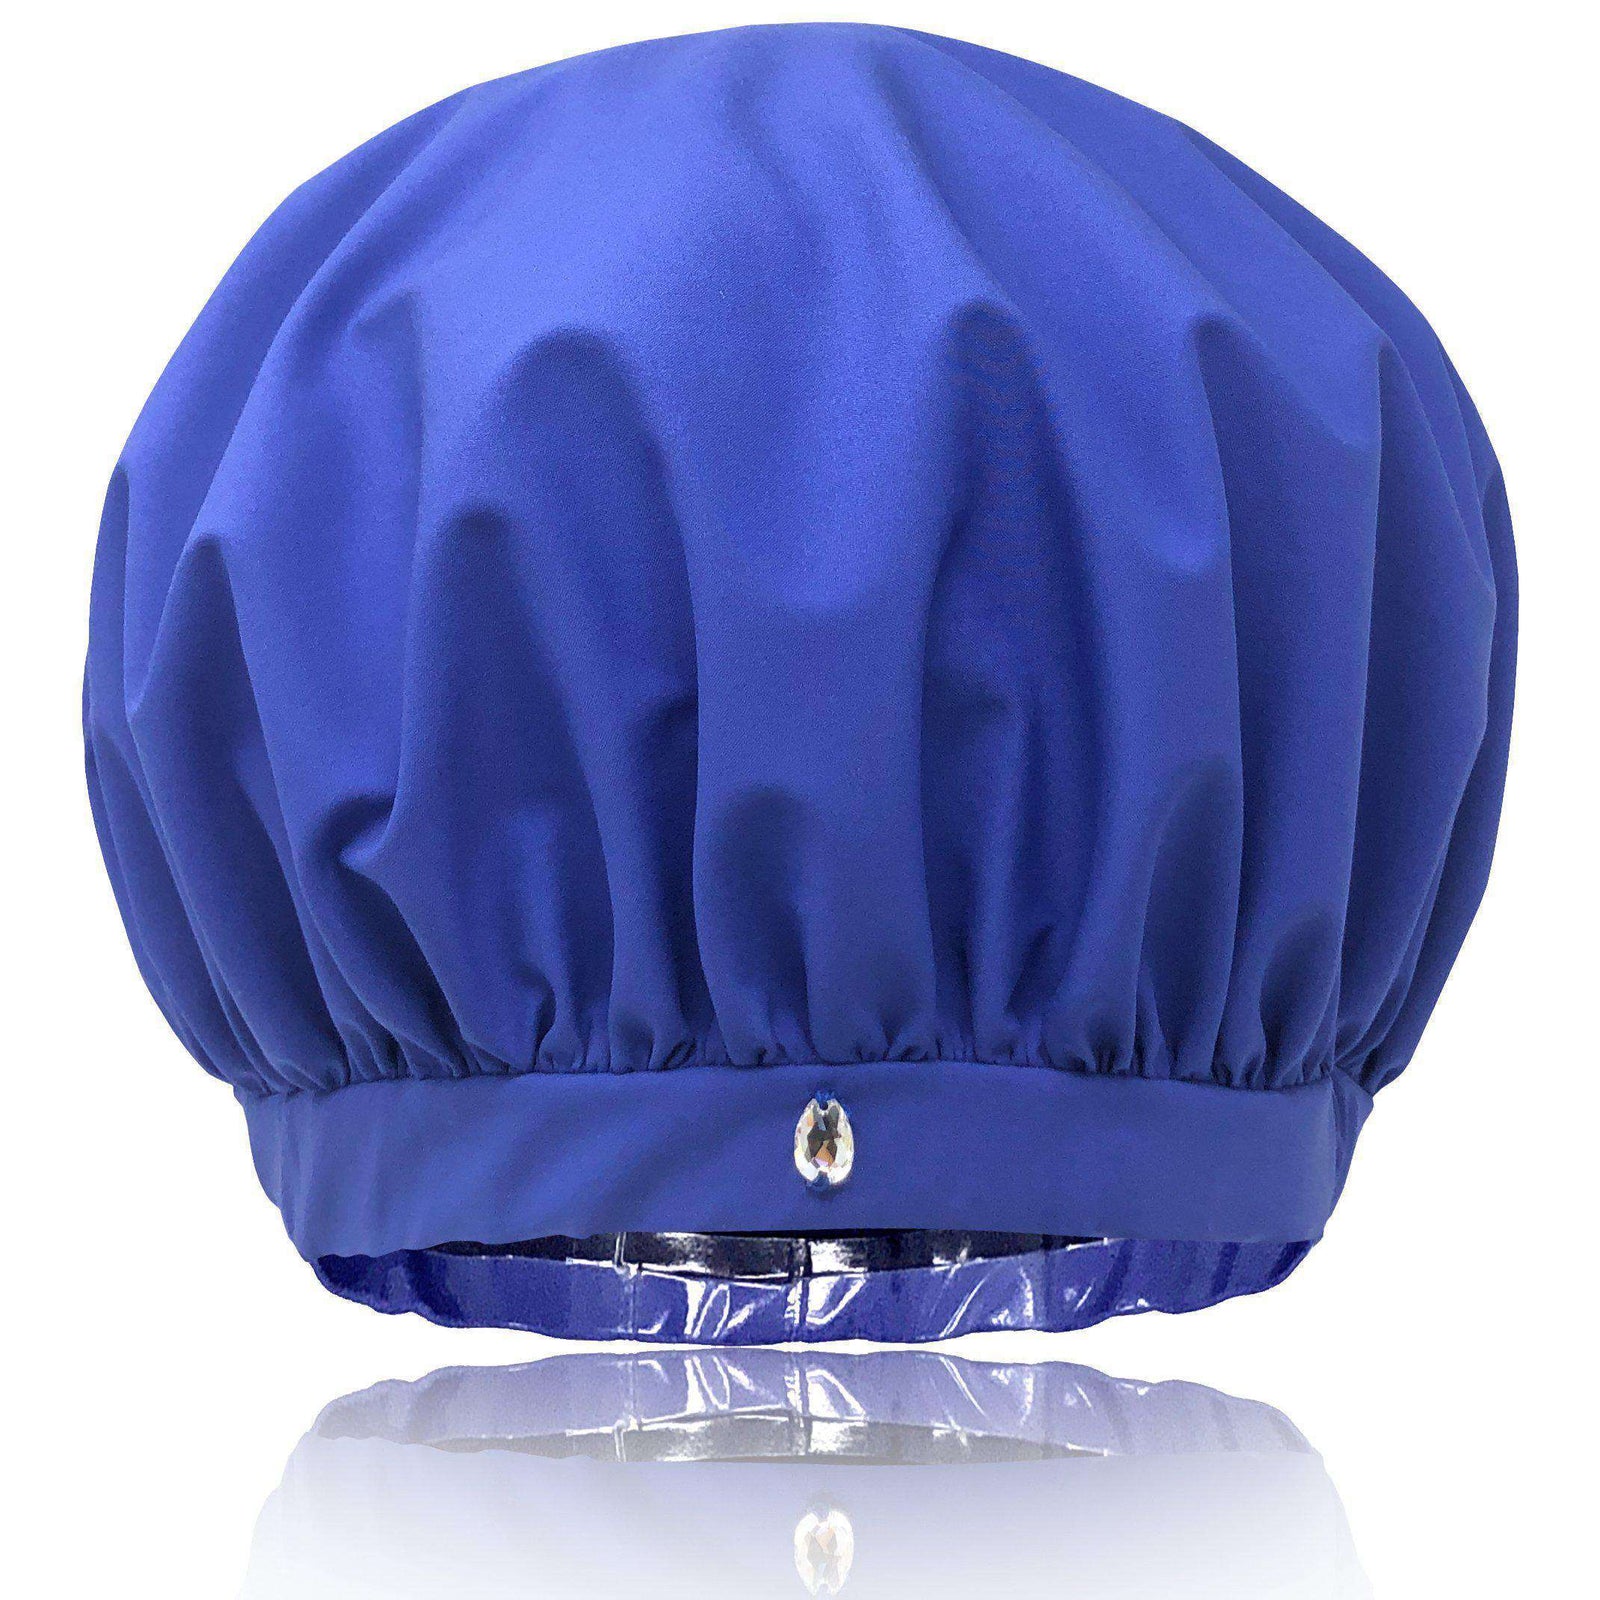 What's a wet bonnet to a satin lined showet cap